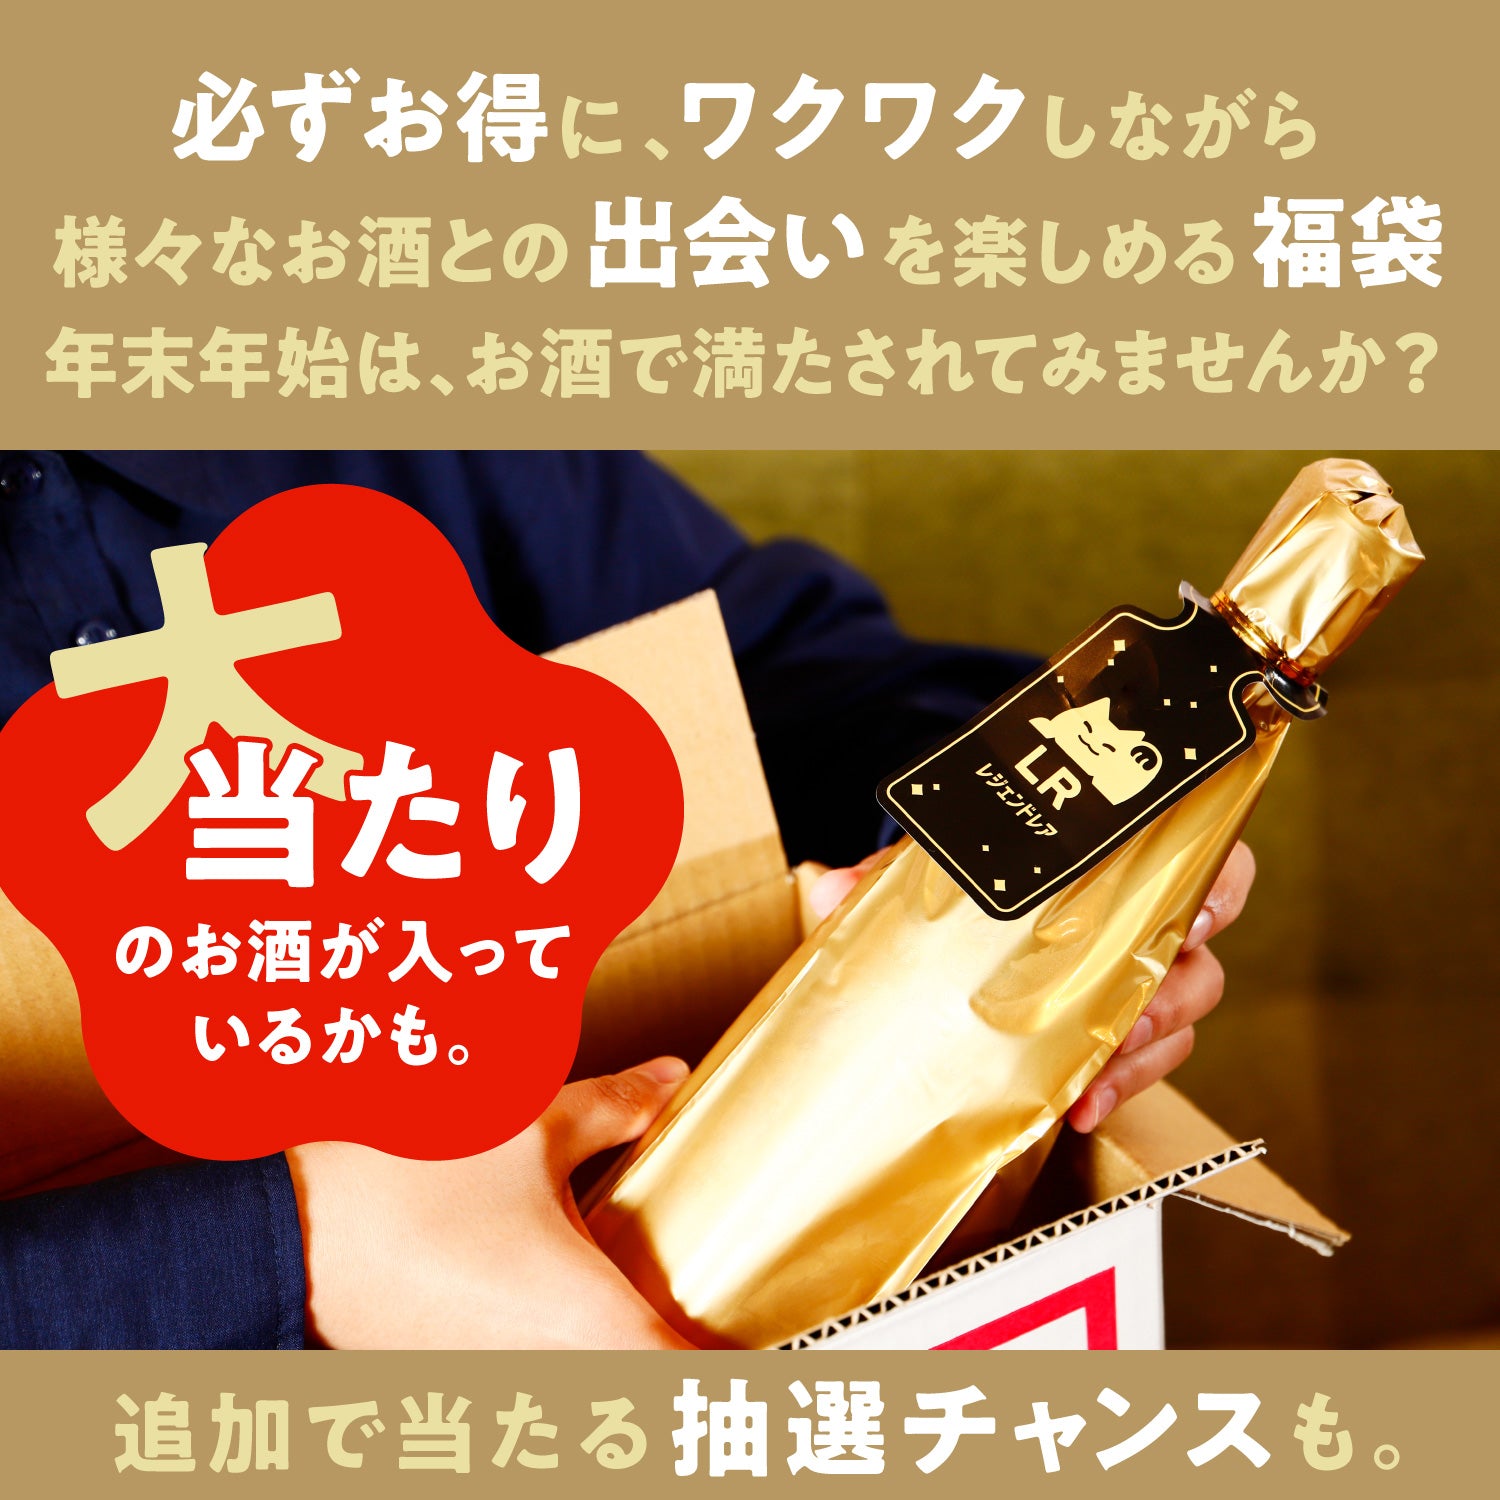 【新年を彩る平盃付き】福を招くお酒の初売り福袋